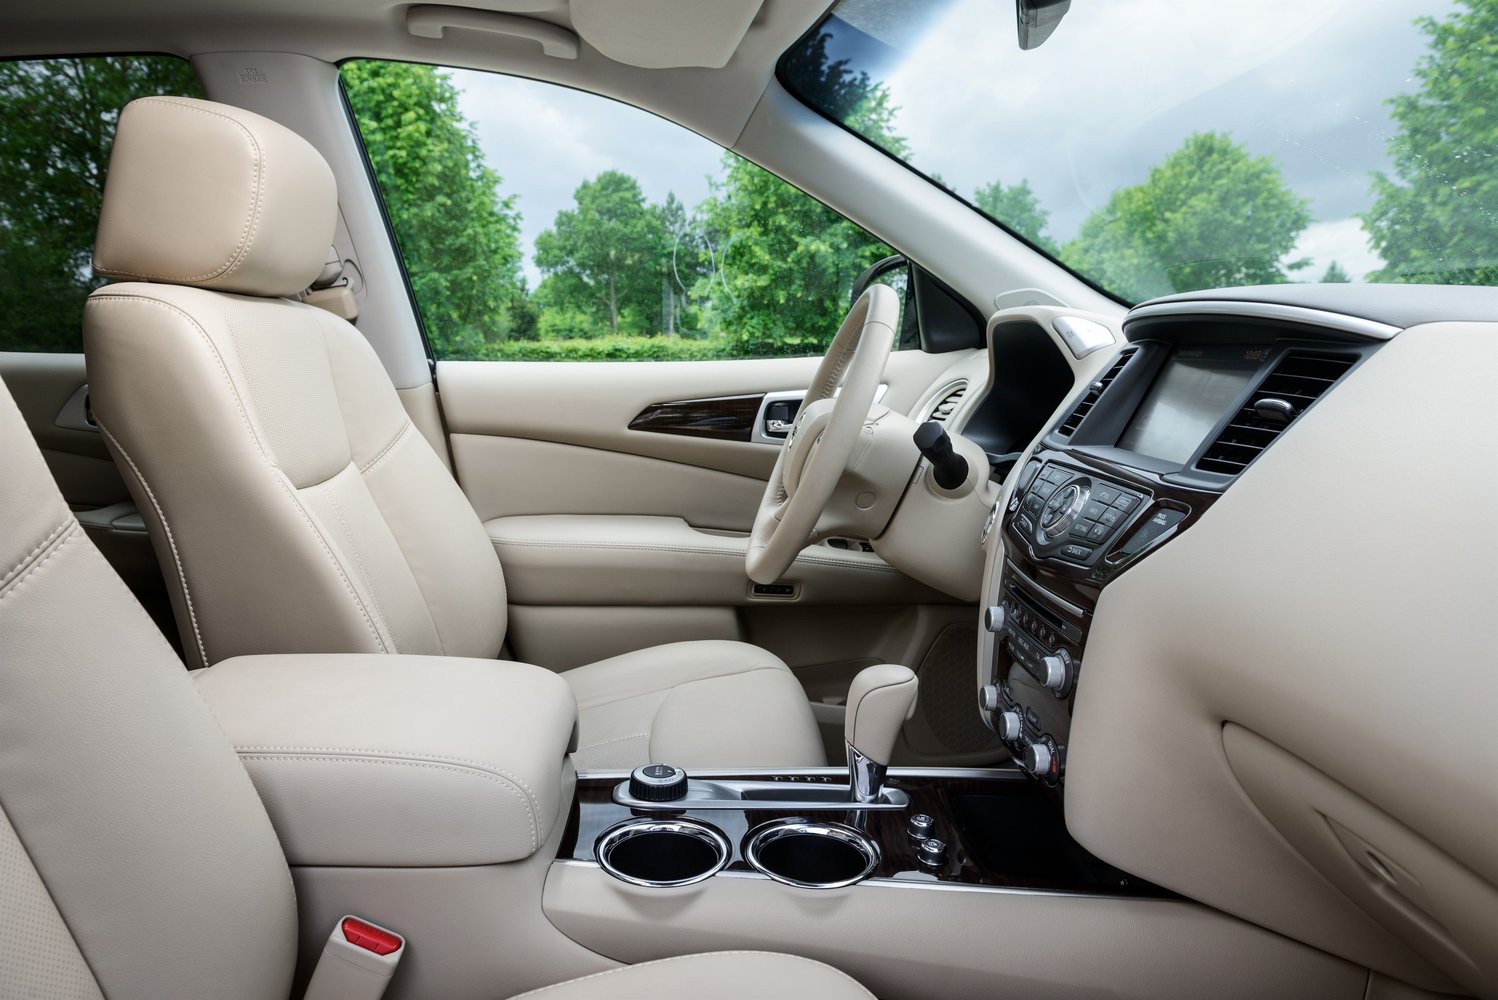 кроссовер Nissan Pathfinder 2014 - 2016г выпуска модификация 3.5 CVT (260 л.с.)